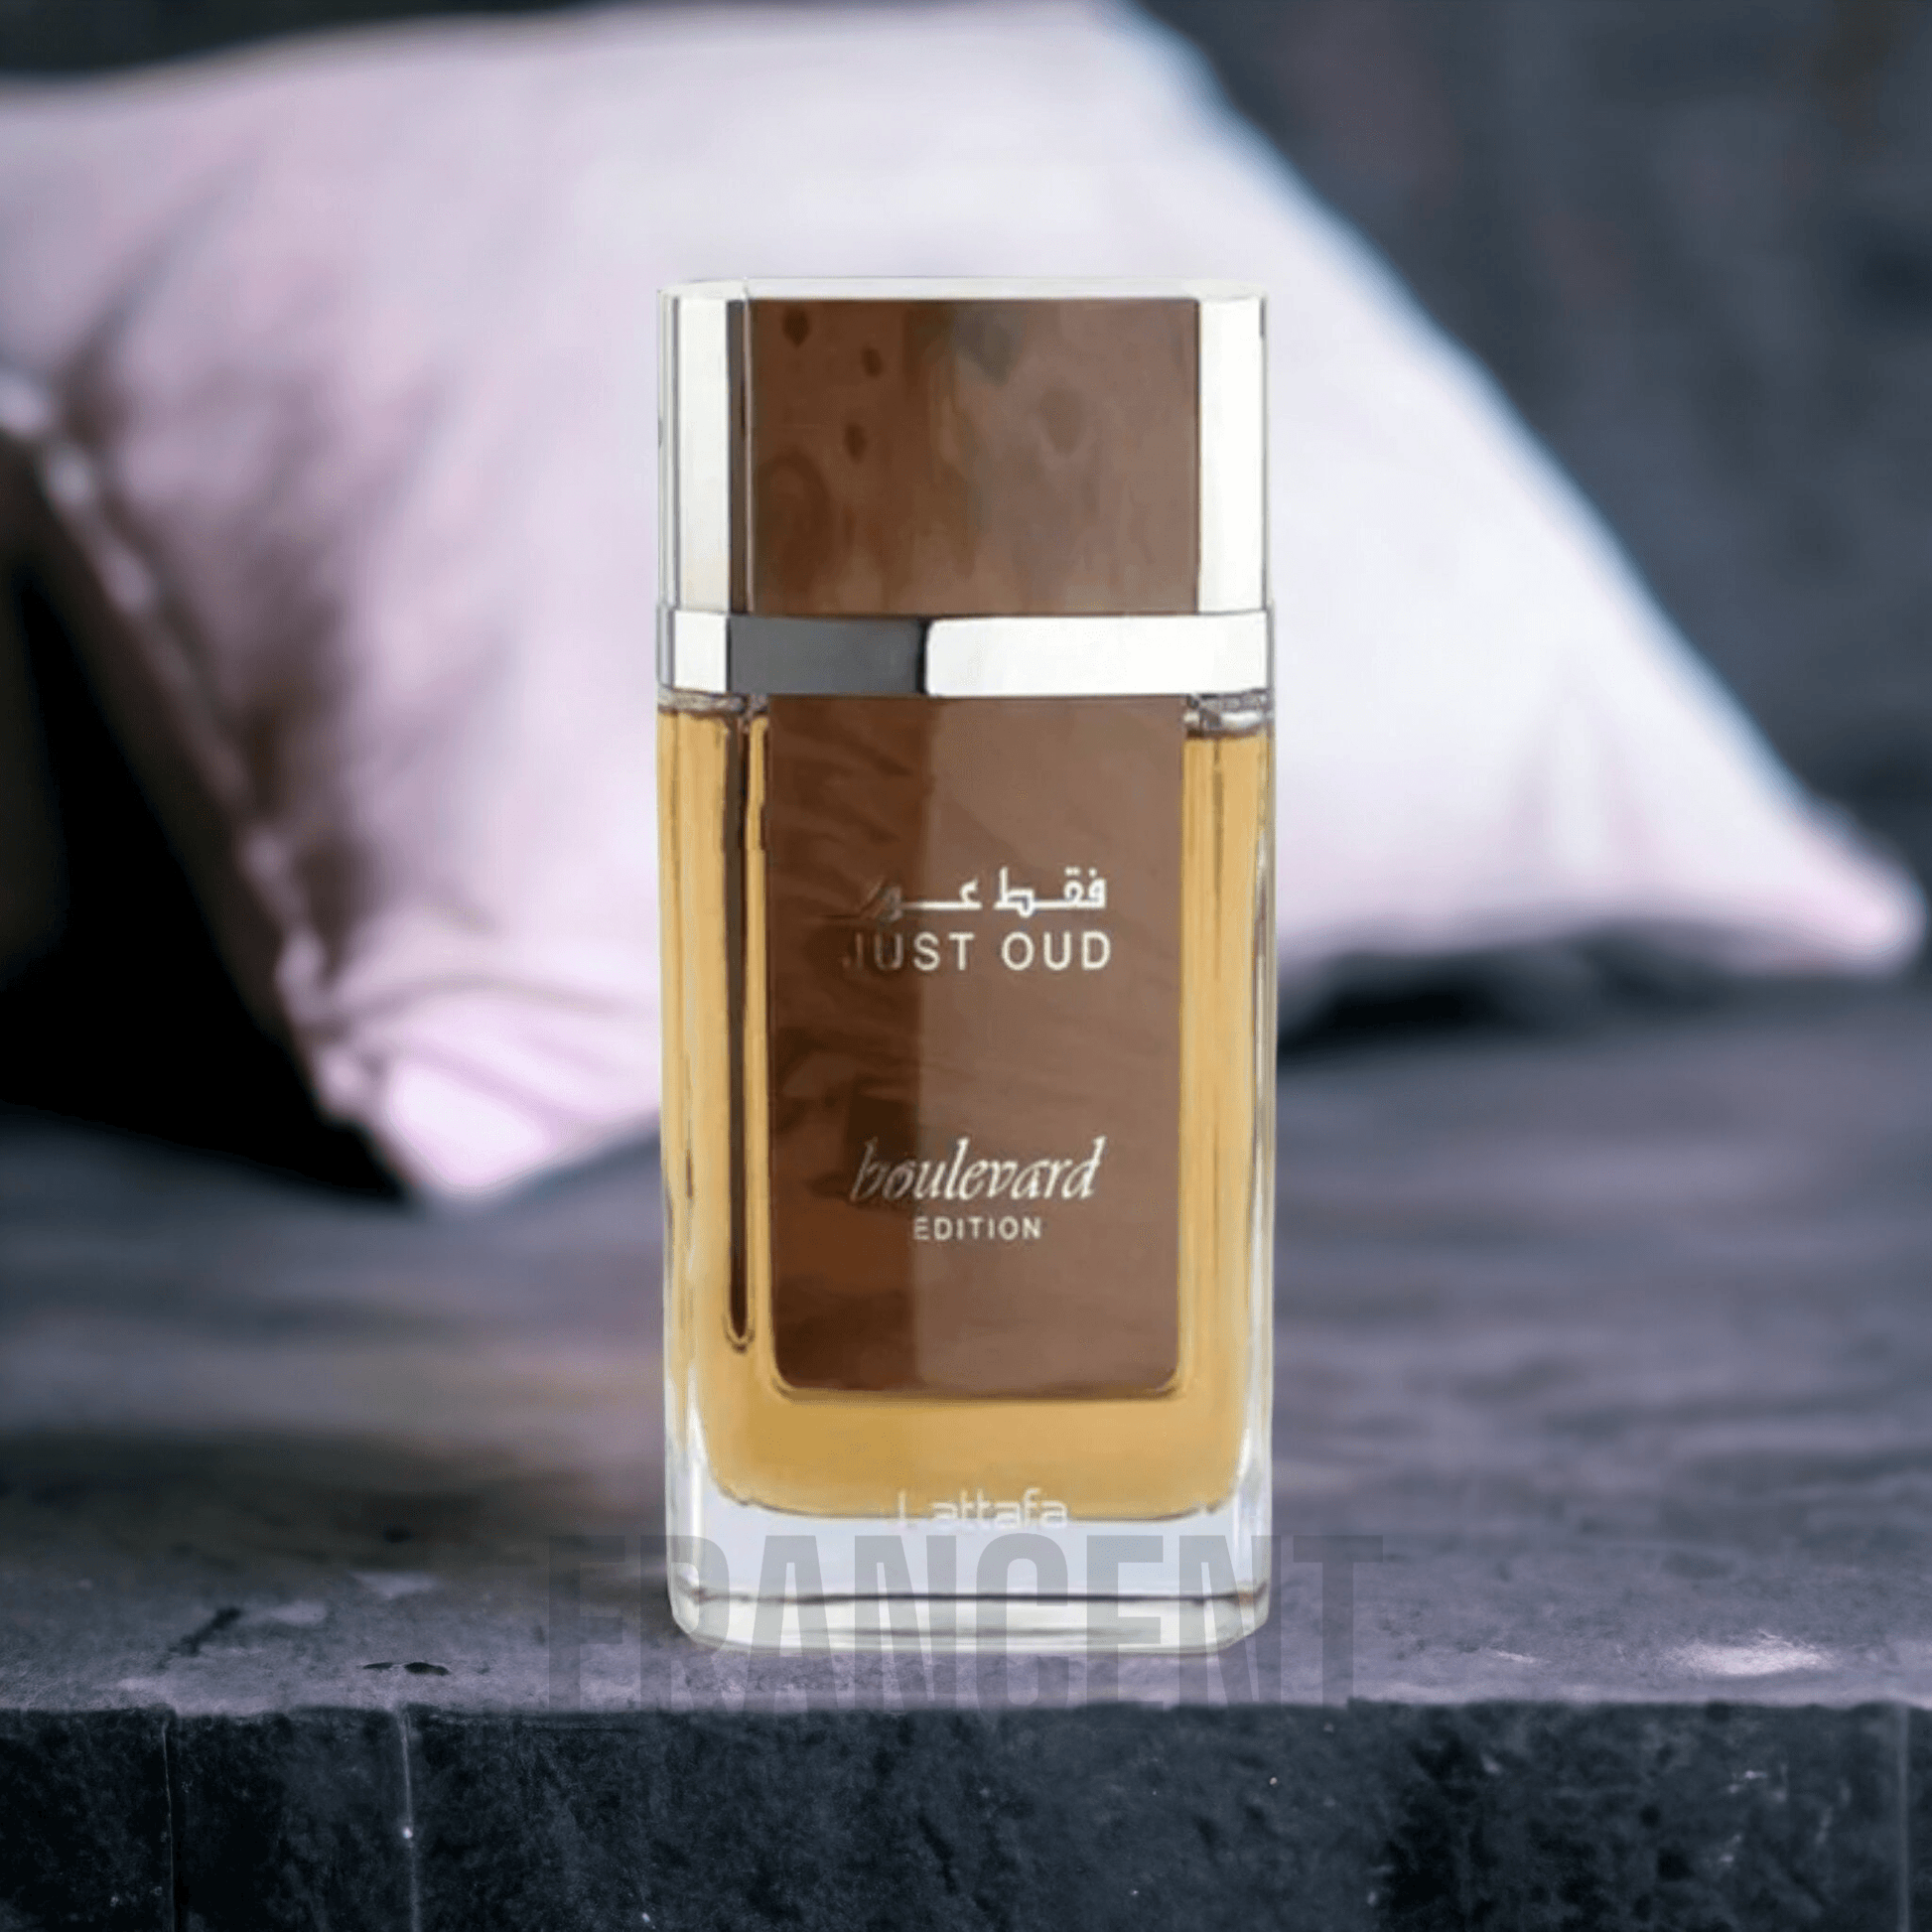 Lattafa | Just Oud Boulevard - Francent Perfumes